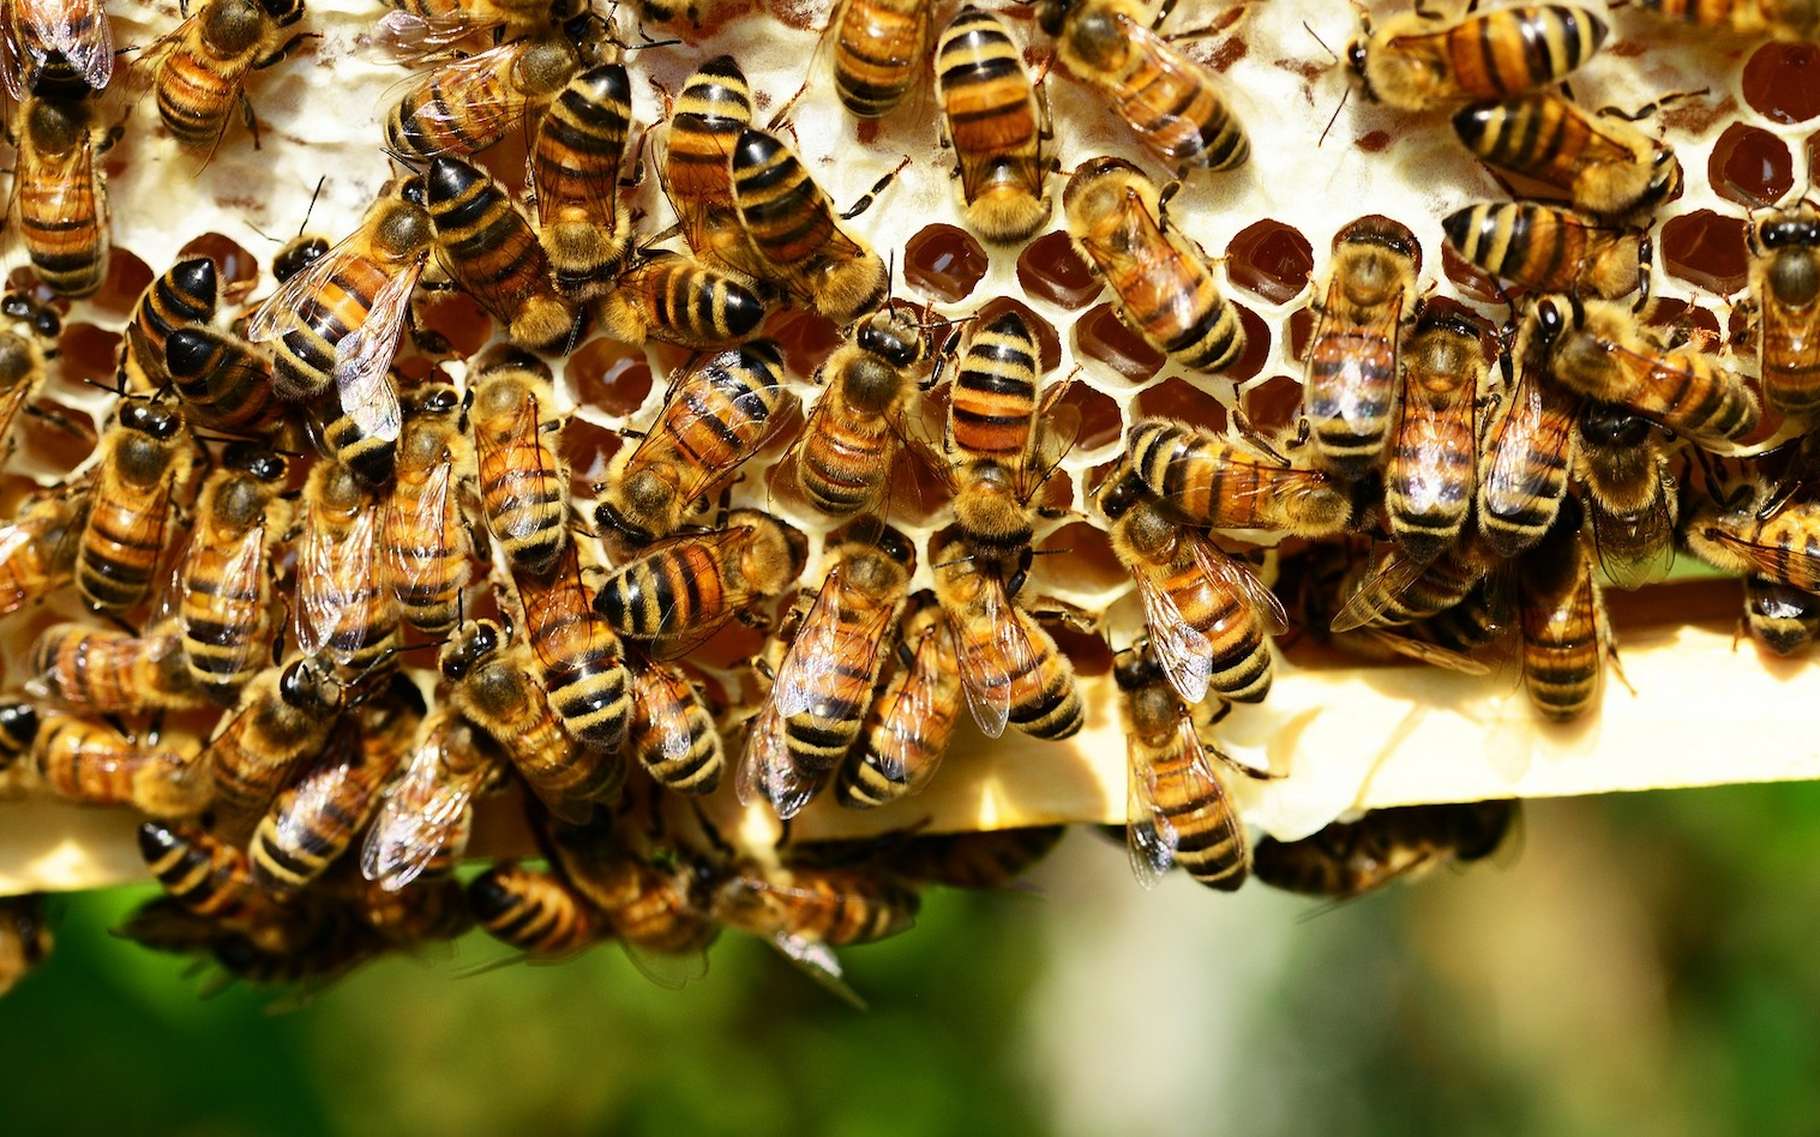 Le déclin des abeilles constitue une « menace sérieuse » pour notre alimentation. Mais il n’y a pas que cela. De manière plus générale, la chute de la biodiversité met réellement en danger notre approvisionnement en nourriture. Et de fait, notre santé. © PollyDot, Pixabay License